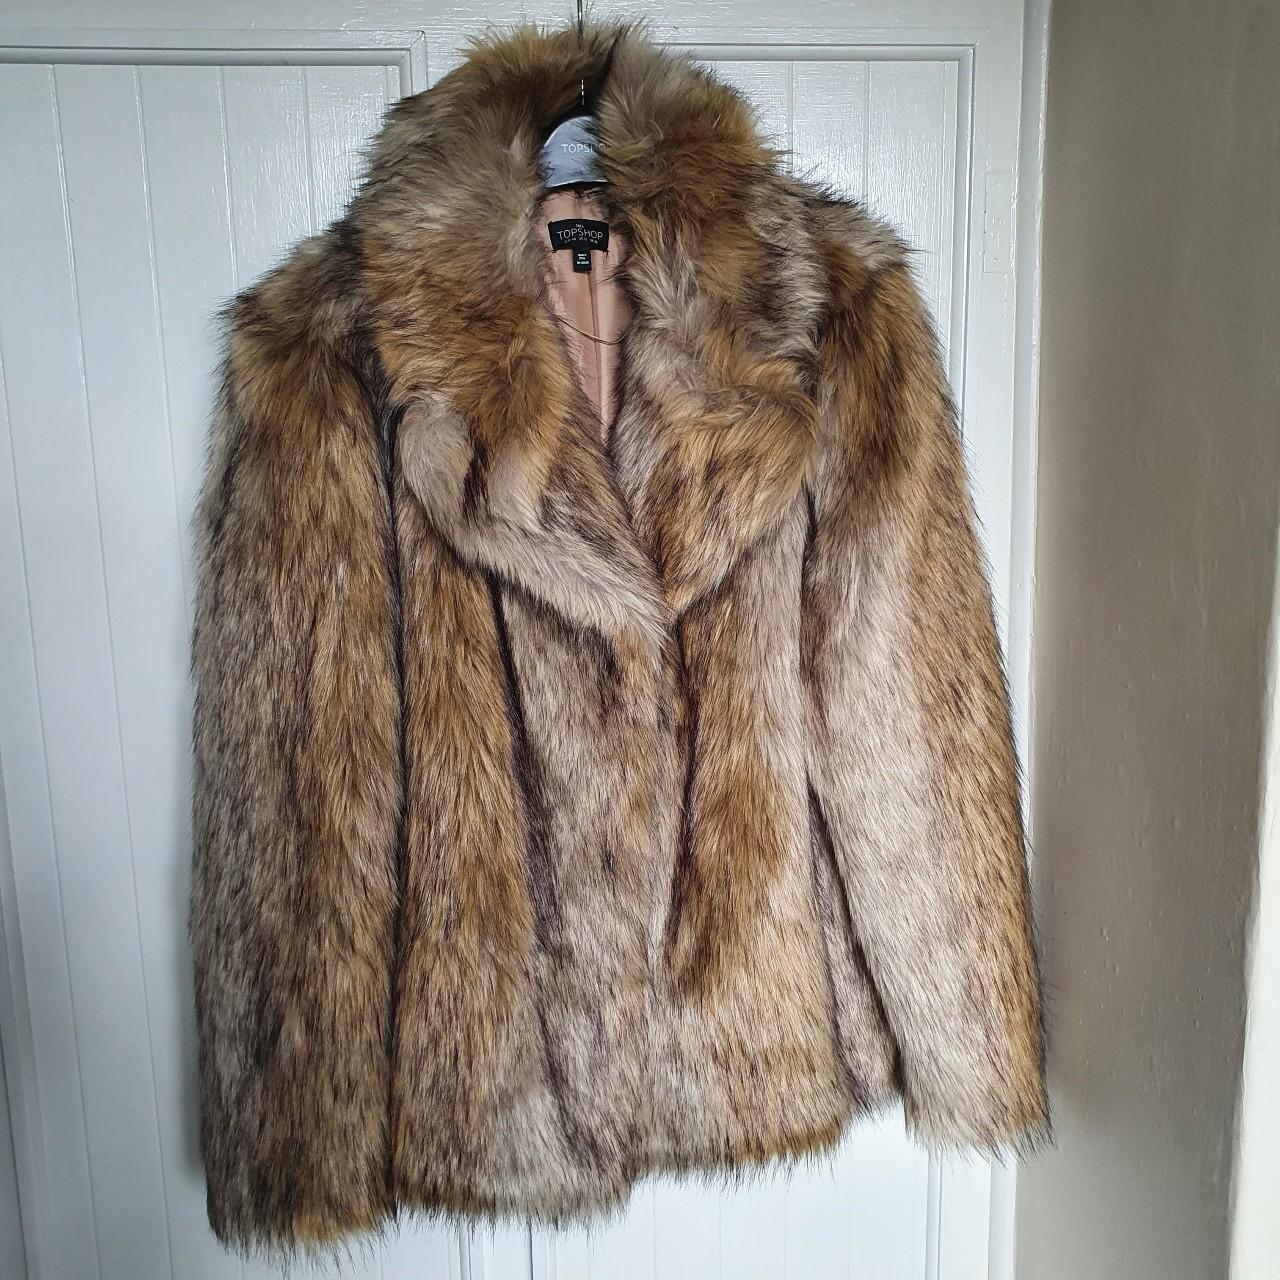 Topshop faux fur coat Beautiful thick #topshop faux - Depop